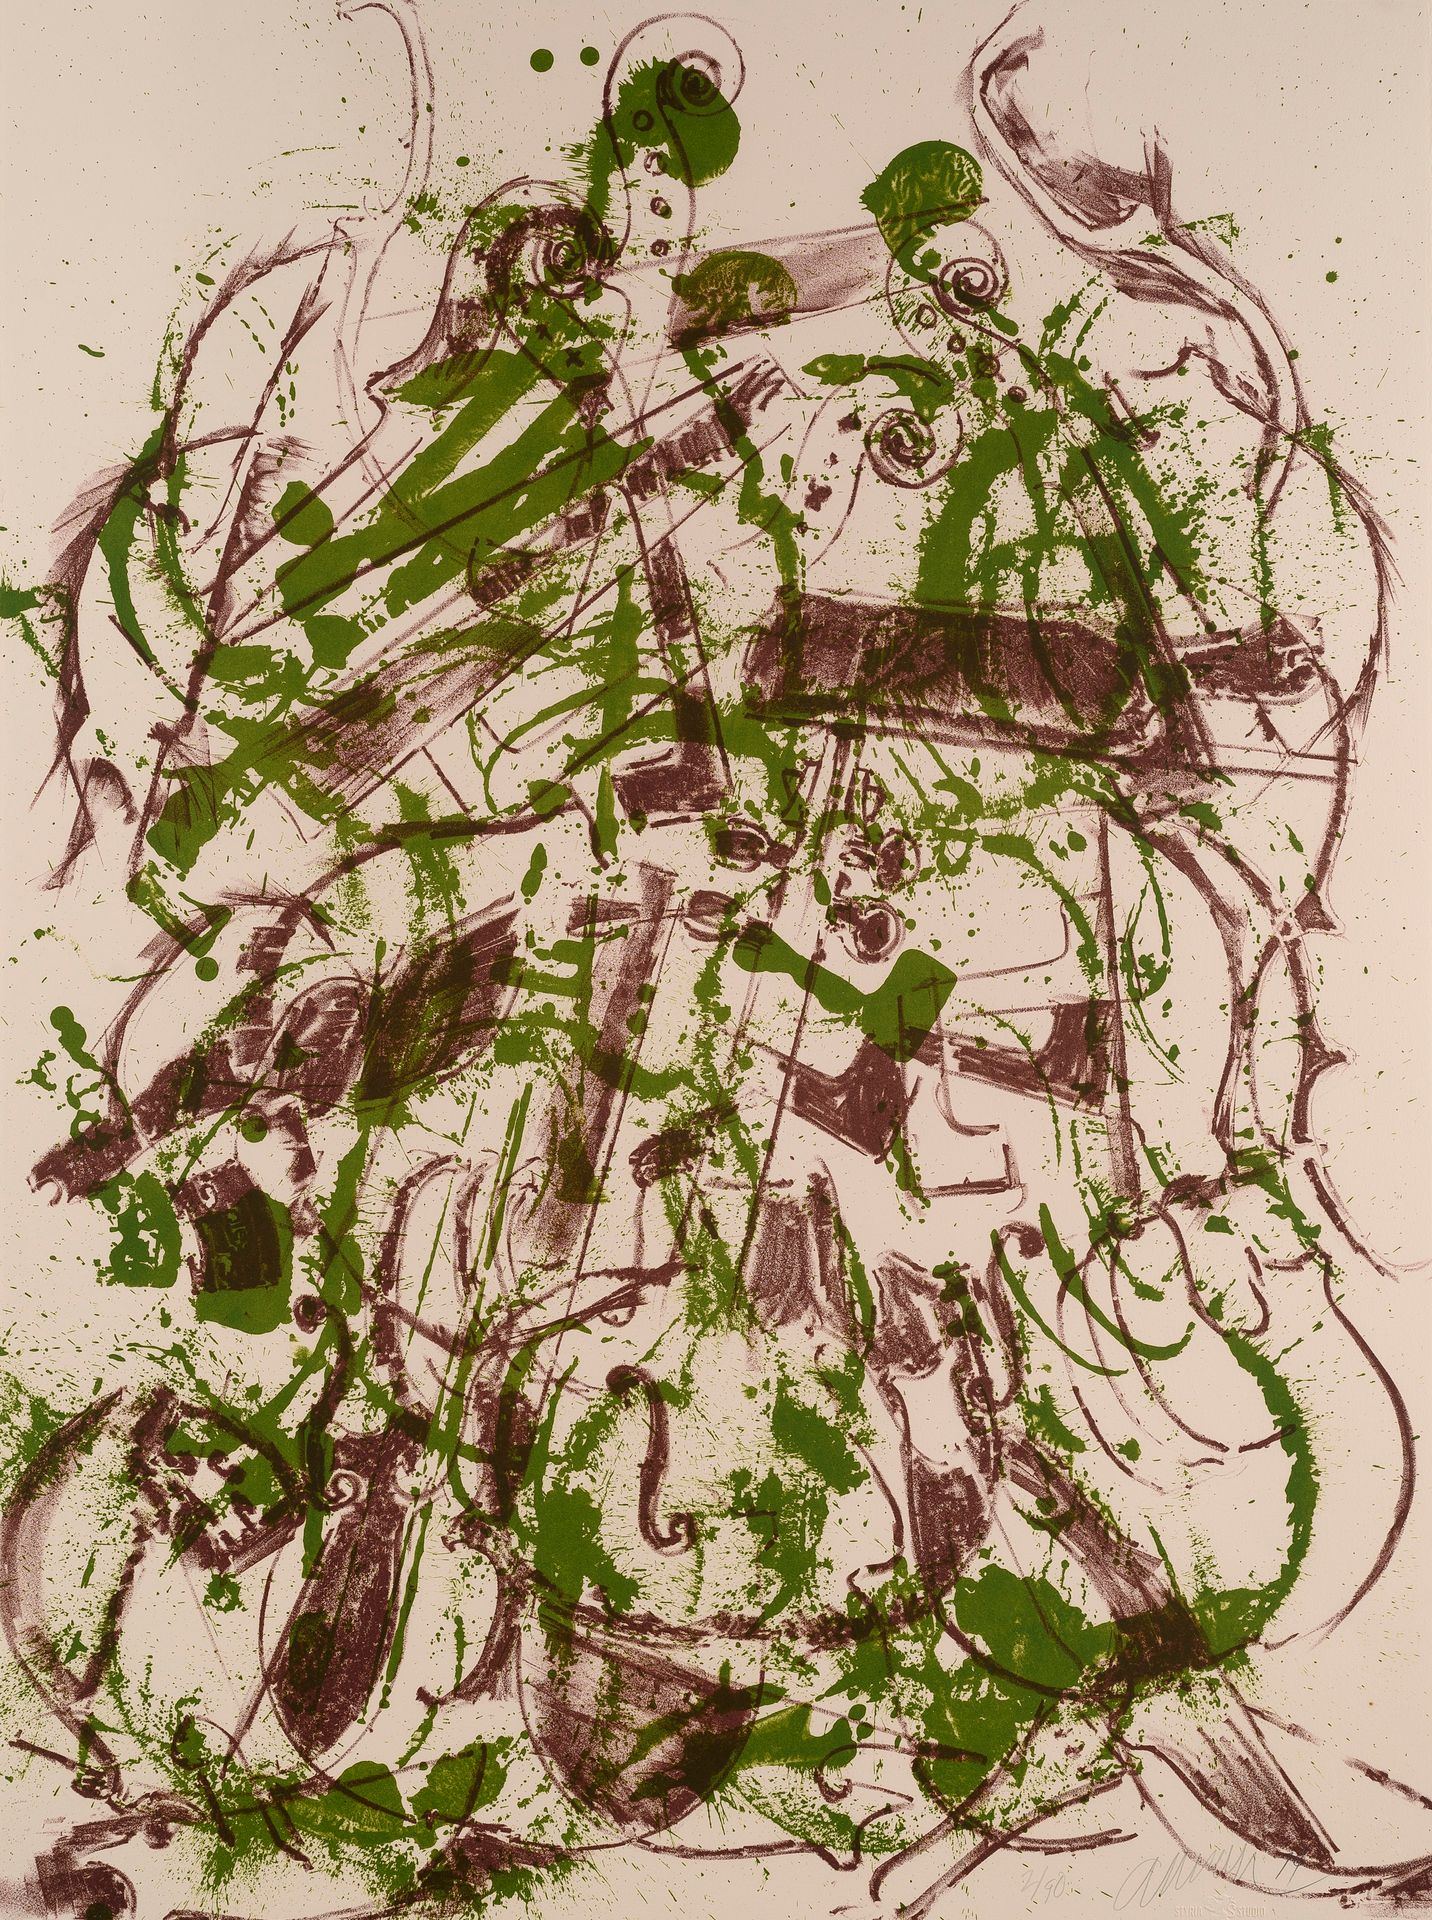 Null 阿尔曼(1928-2005)

向毕加索致敬, 1974

双色丝网版画（绿色和棕色）在

为作品集《致敬》制作的Rives牛皮纸。

毕加索

有签&hellip;